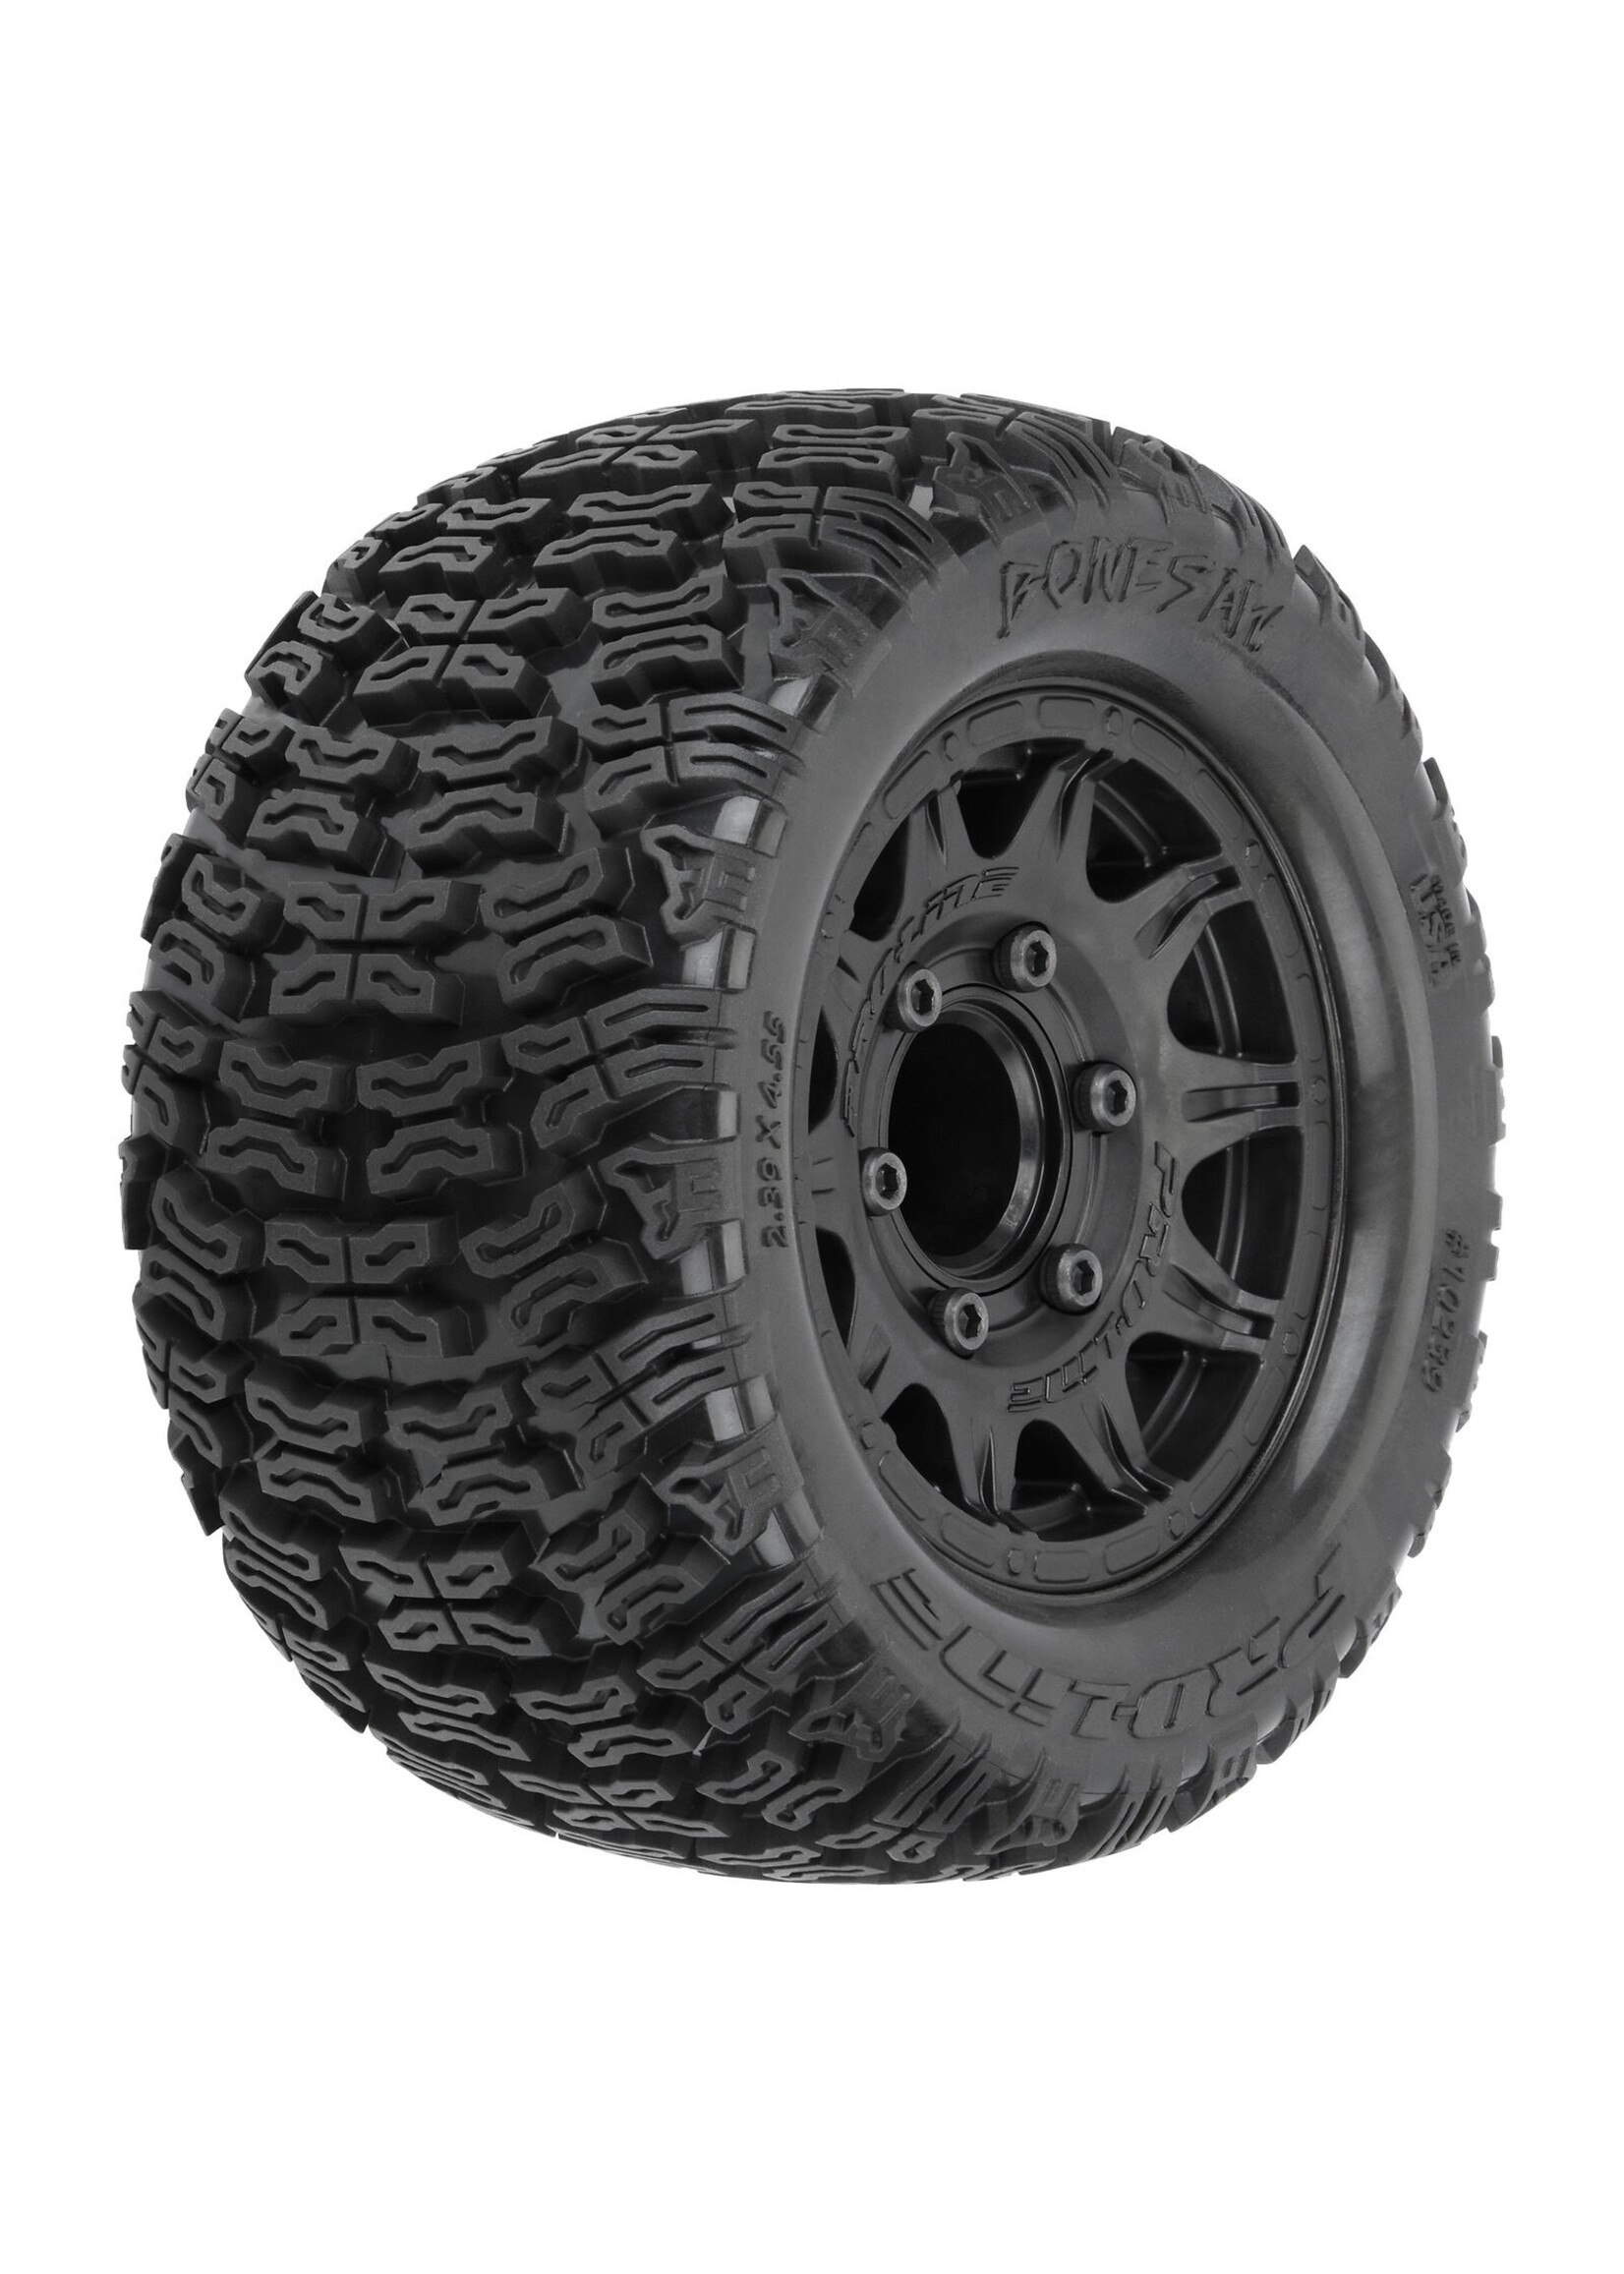 Pro-Line PRO1023910 - Bonesaw 2.8" All-Terrain Truck Tires - Front/Rear